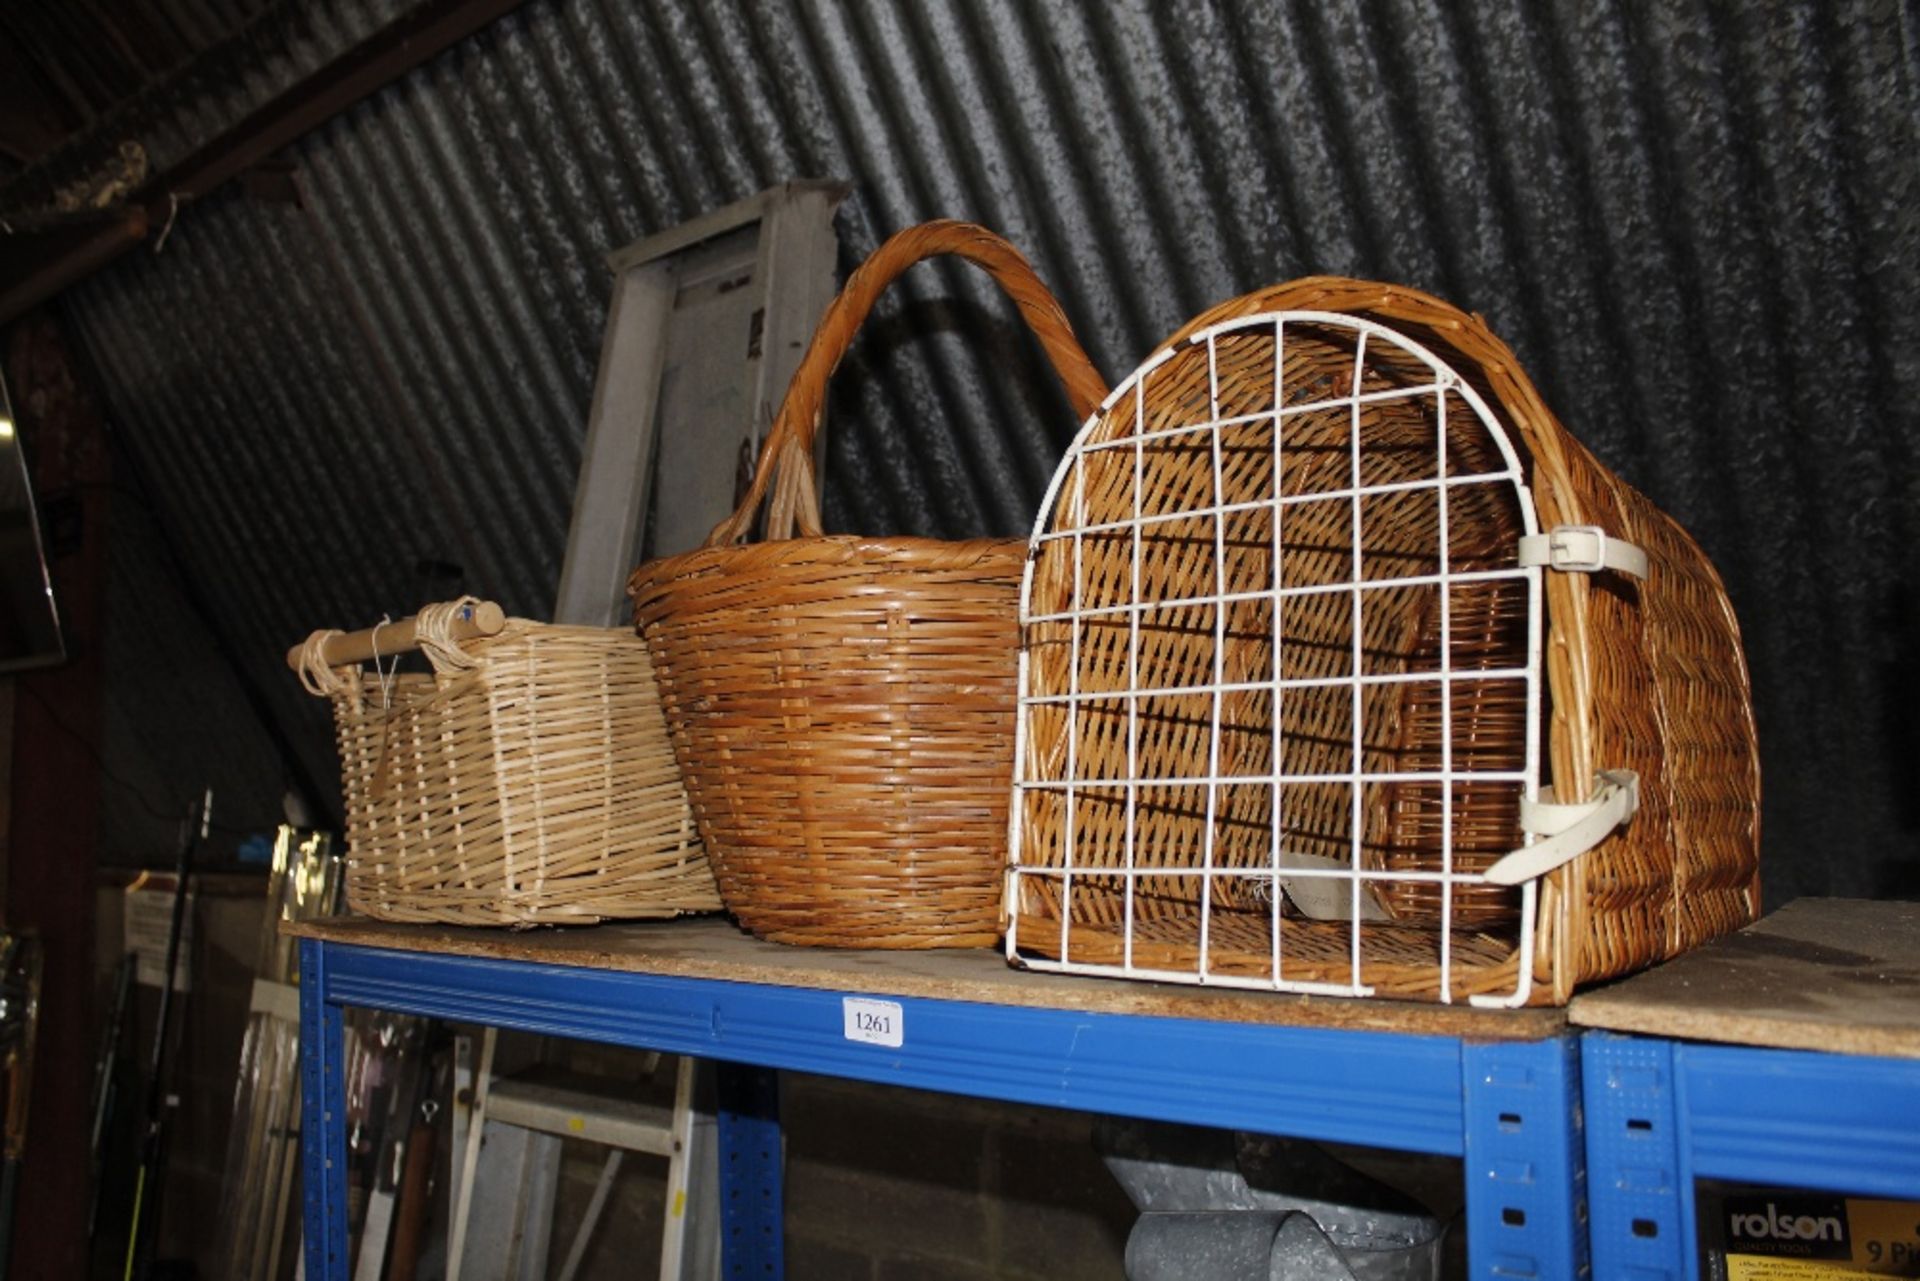 Two wicker baskets and a wicker pet basket